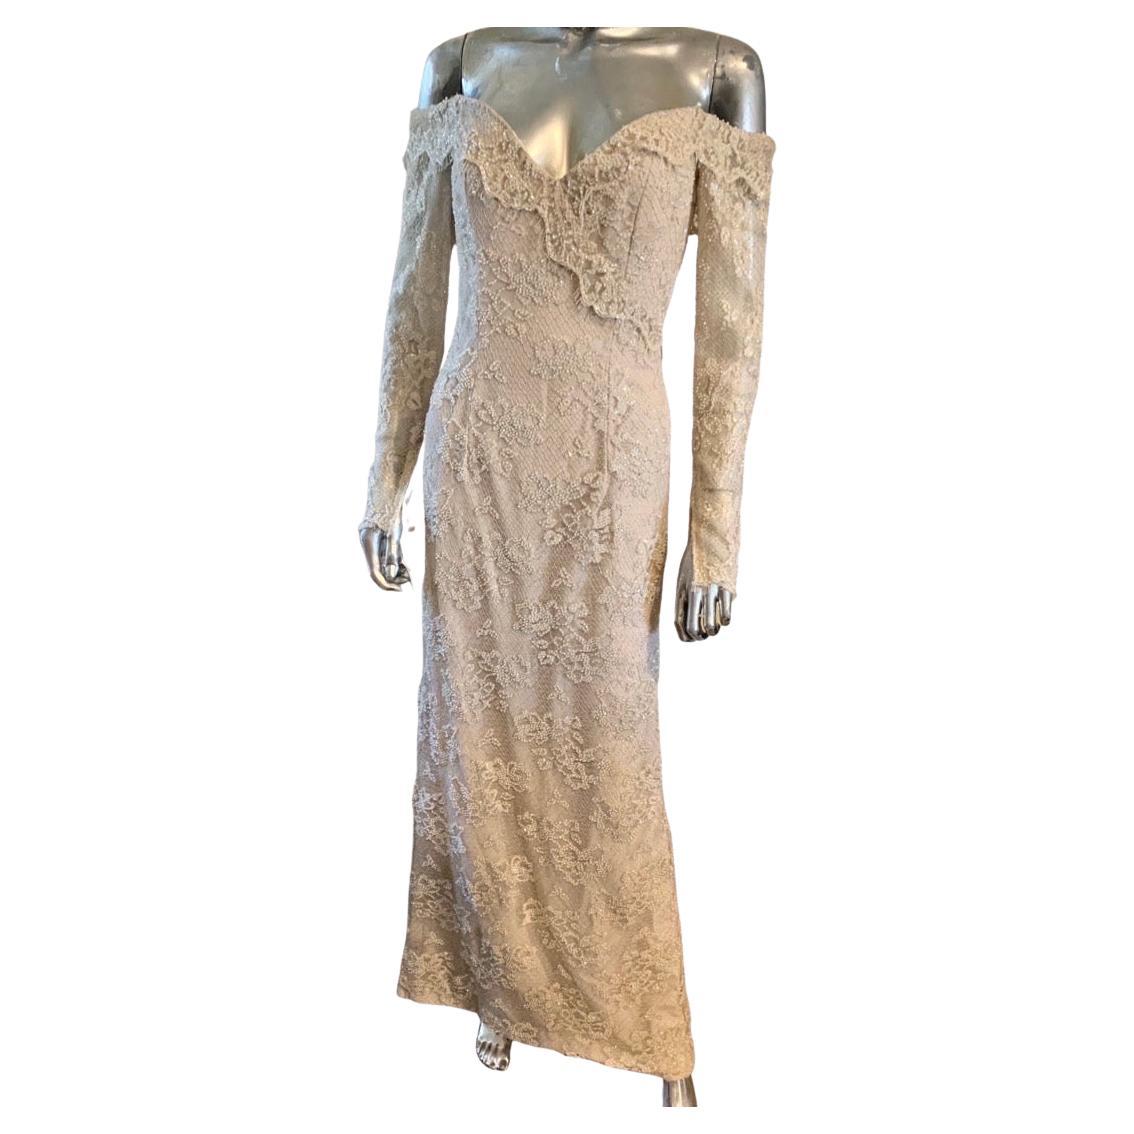 Une robe de soirée vintage Bob Mackie Boutique qui n'a jamais été portée ! NWT. Acheté chez Lord and Taylor à New York. La robe est entièrement perlée à la main en lits d'aurore boréale sur un filet métallique argenté. Les perles sont si complexes